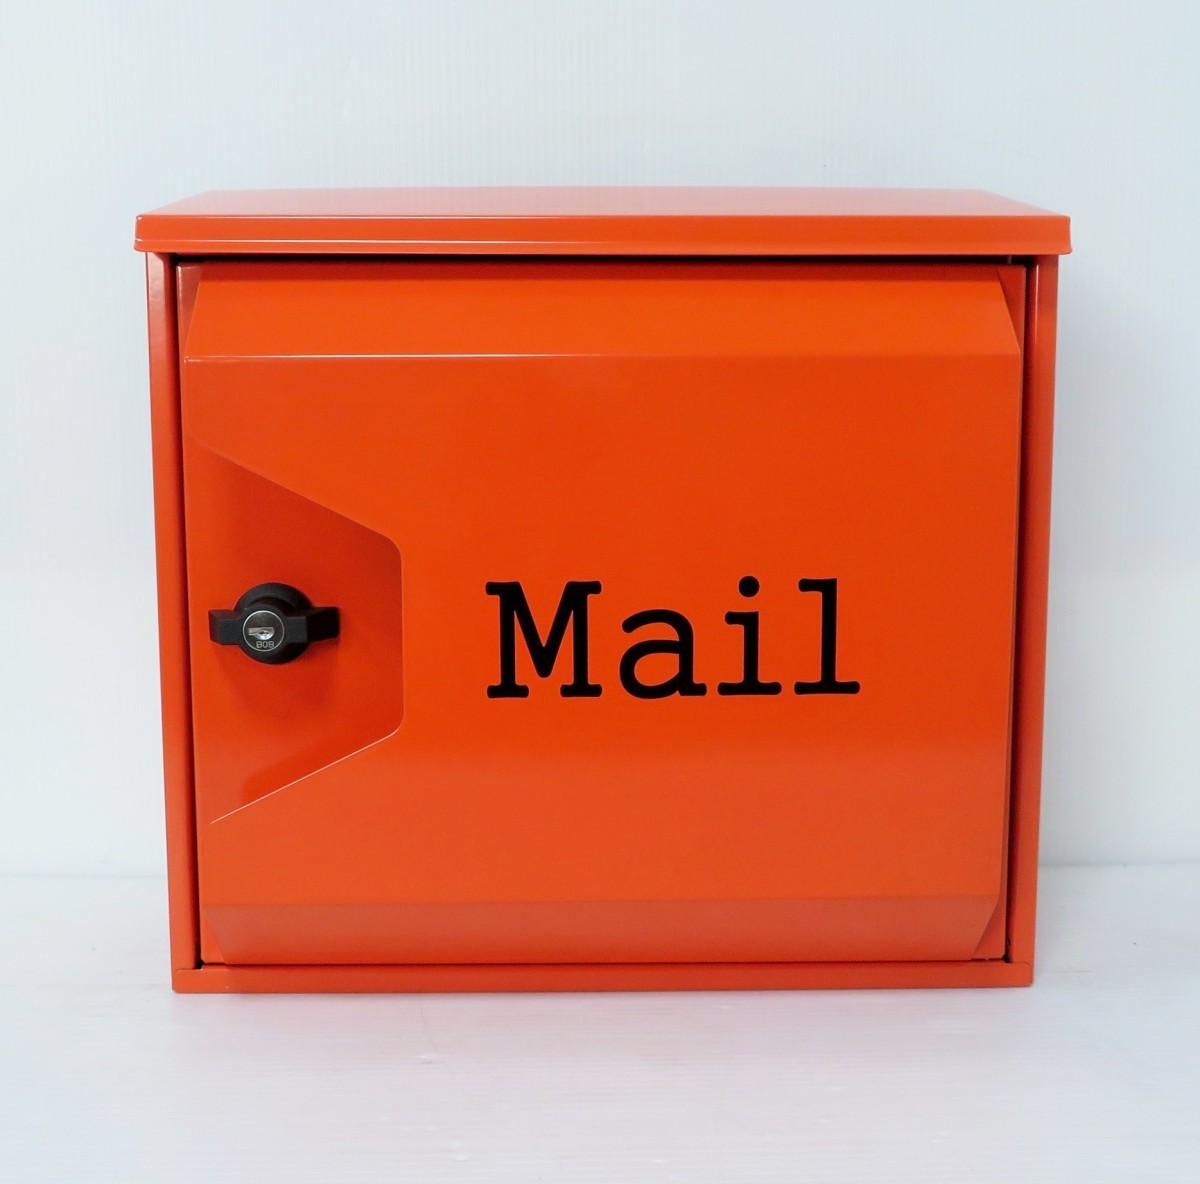 郵便ポスト郵便受けおしゃれかわいい人気北欧モダンデザイン大型メールボックス 壁掛けプレミアムステンレス オレンジ色ポストpm044